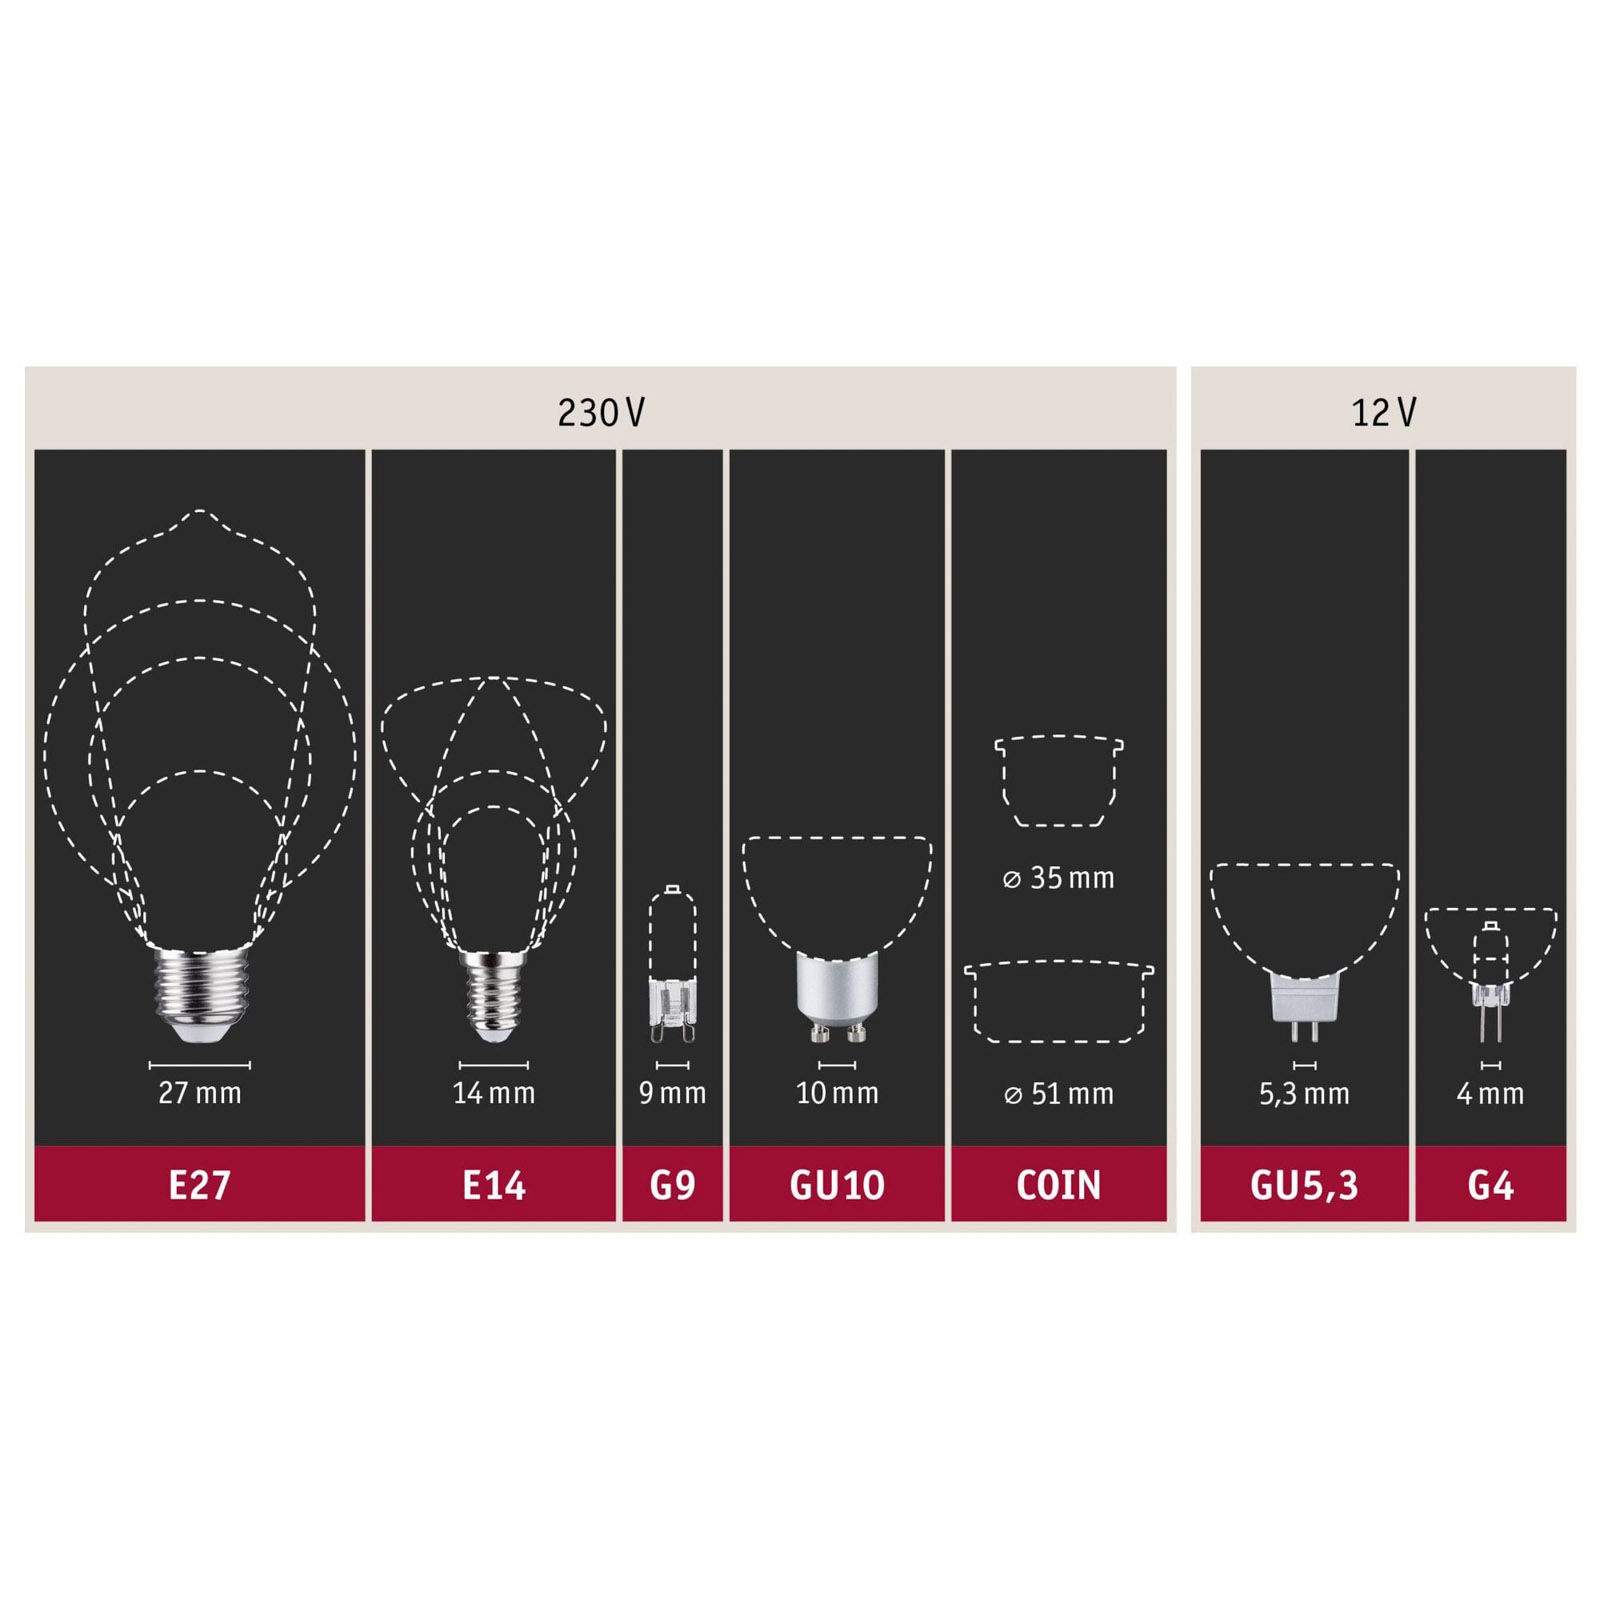 LED žiarovka E27 s 9W vláknom 2 700K číra stmievateľná